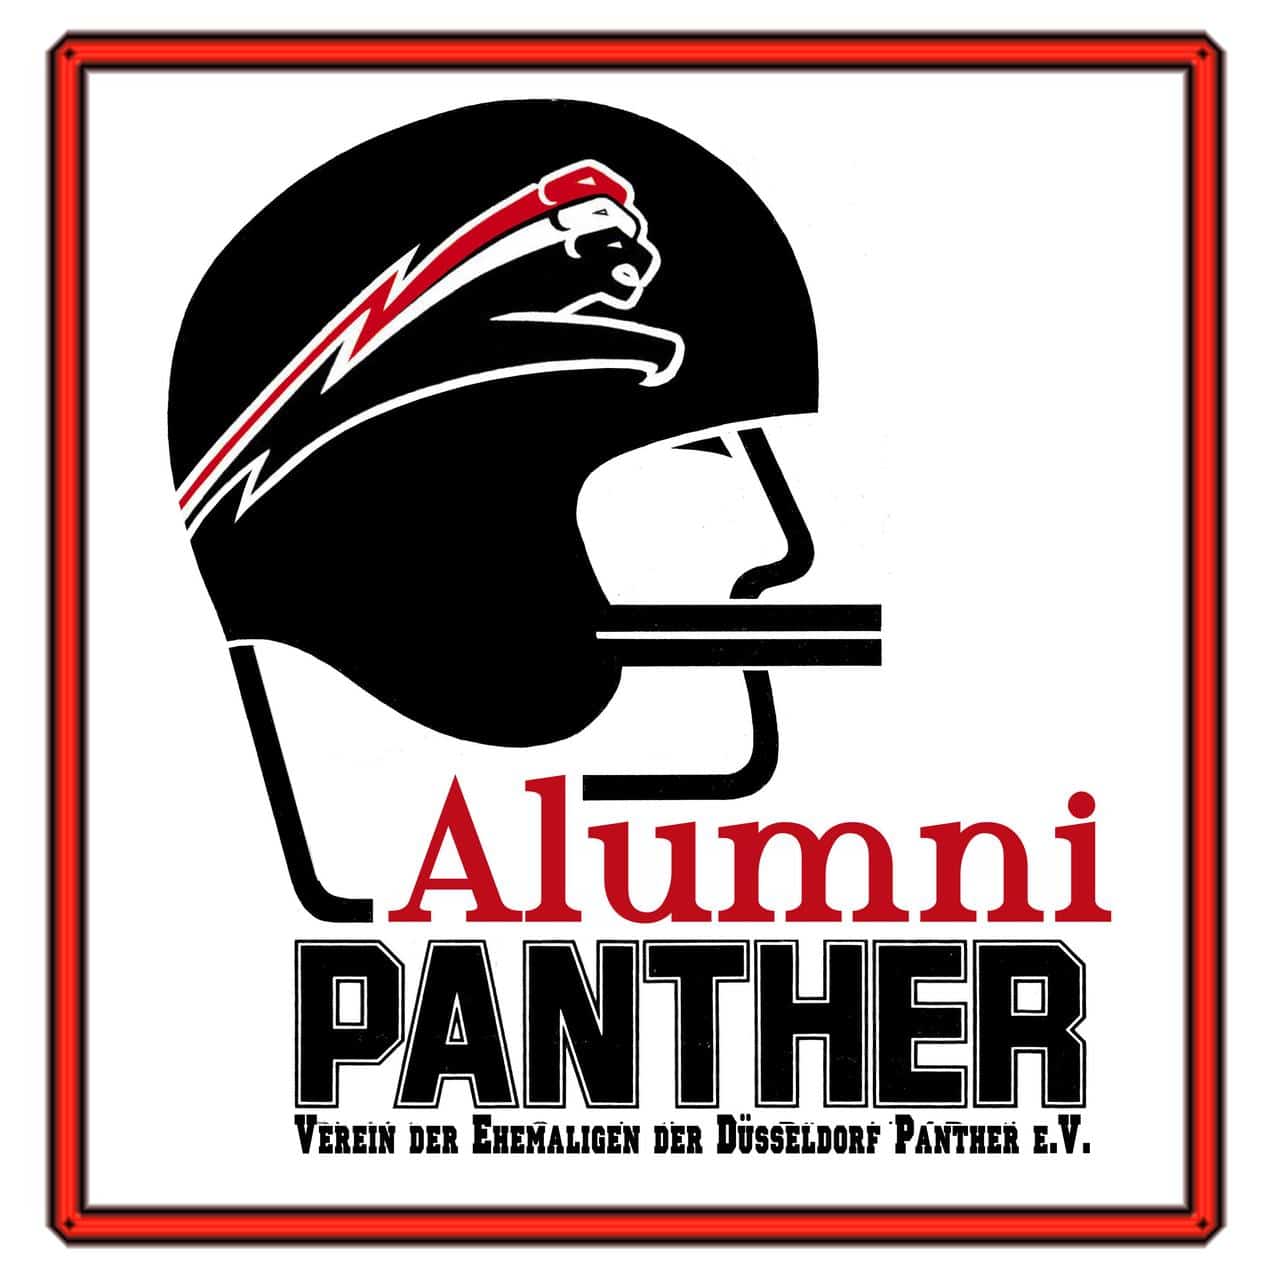 Alumni Panther mit Rahmen u. Untertitel b Kopie